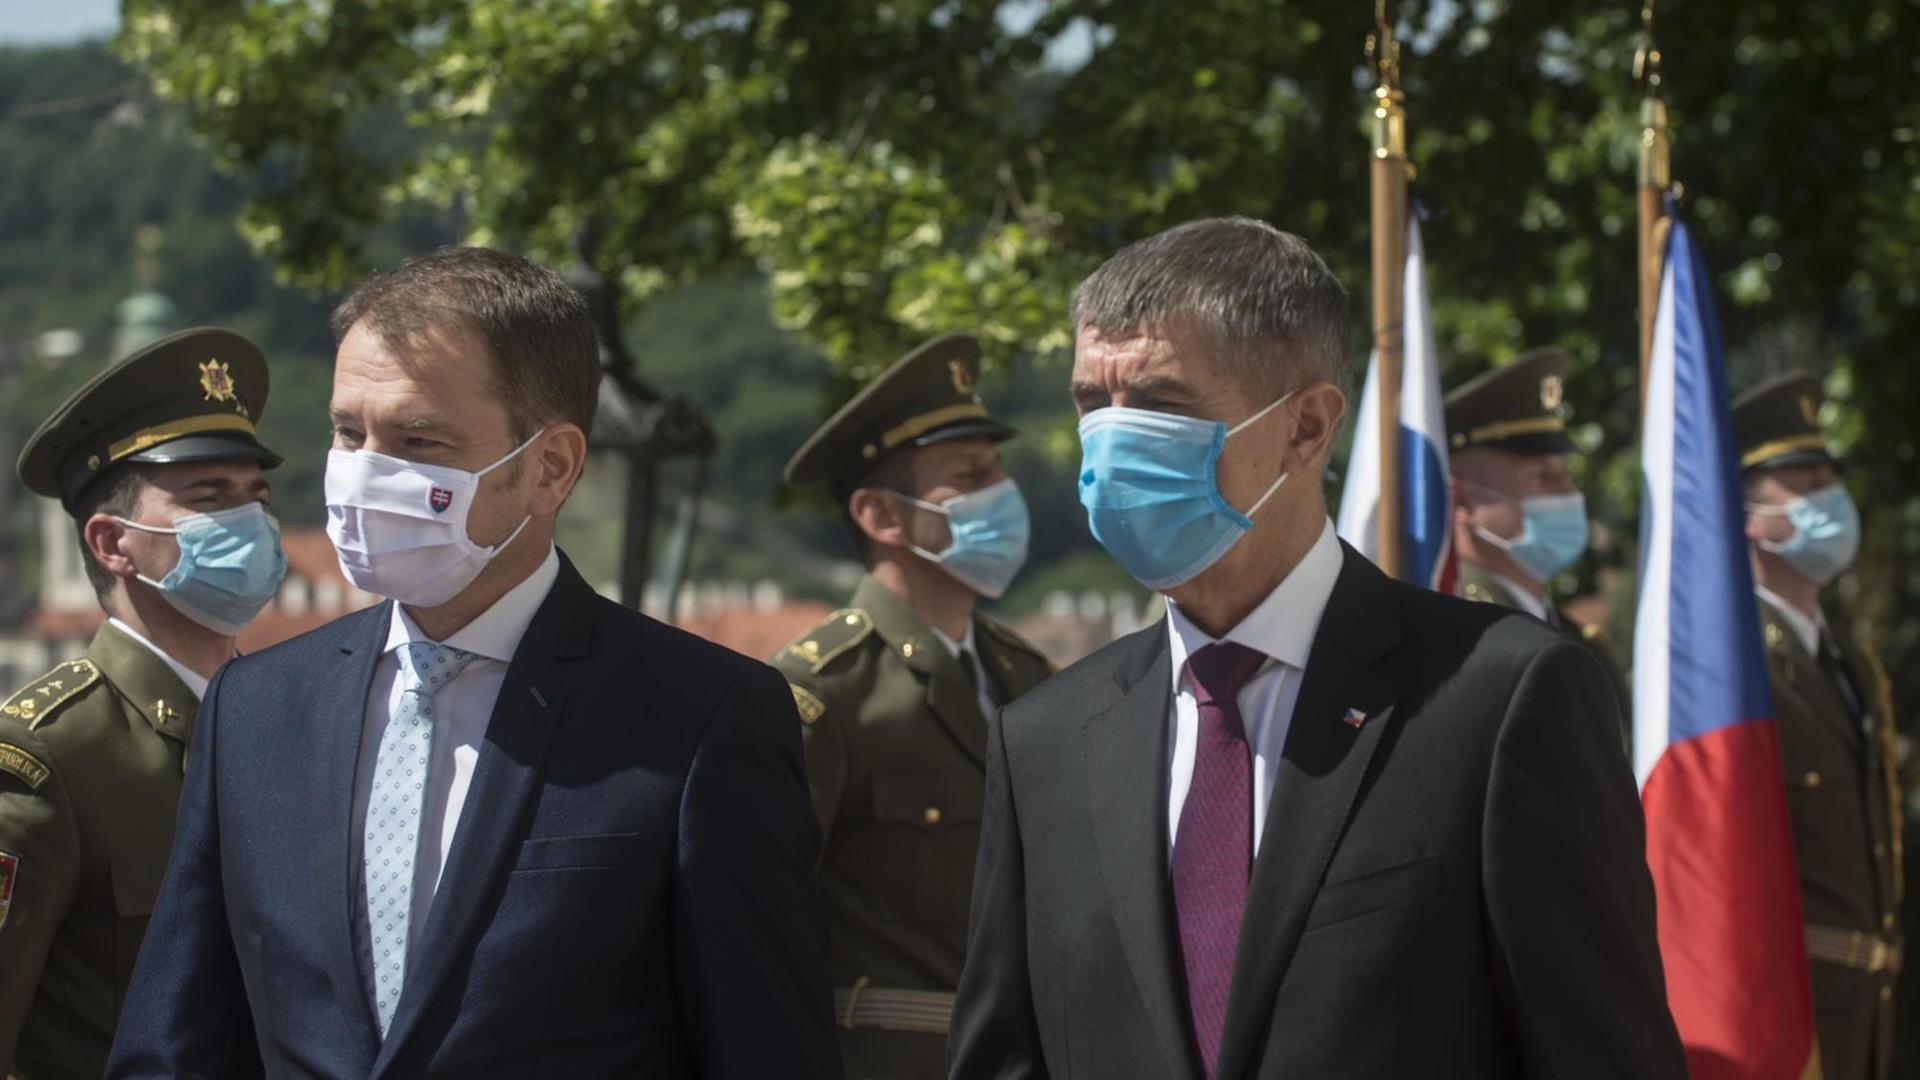 Der tschechische Premierminister Andrej Babis (rechts im Bild) und der slowakische Ministerpräsident Igor Matovic, beide mit Gesichtsmasken, am 3.6.2020 in Prag.